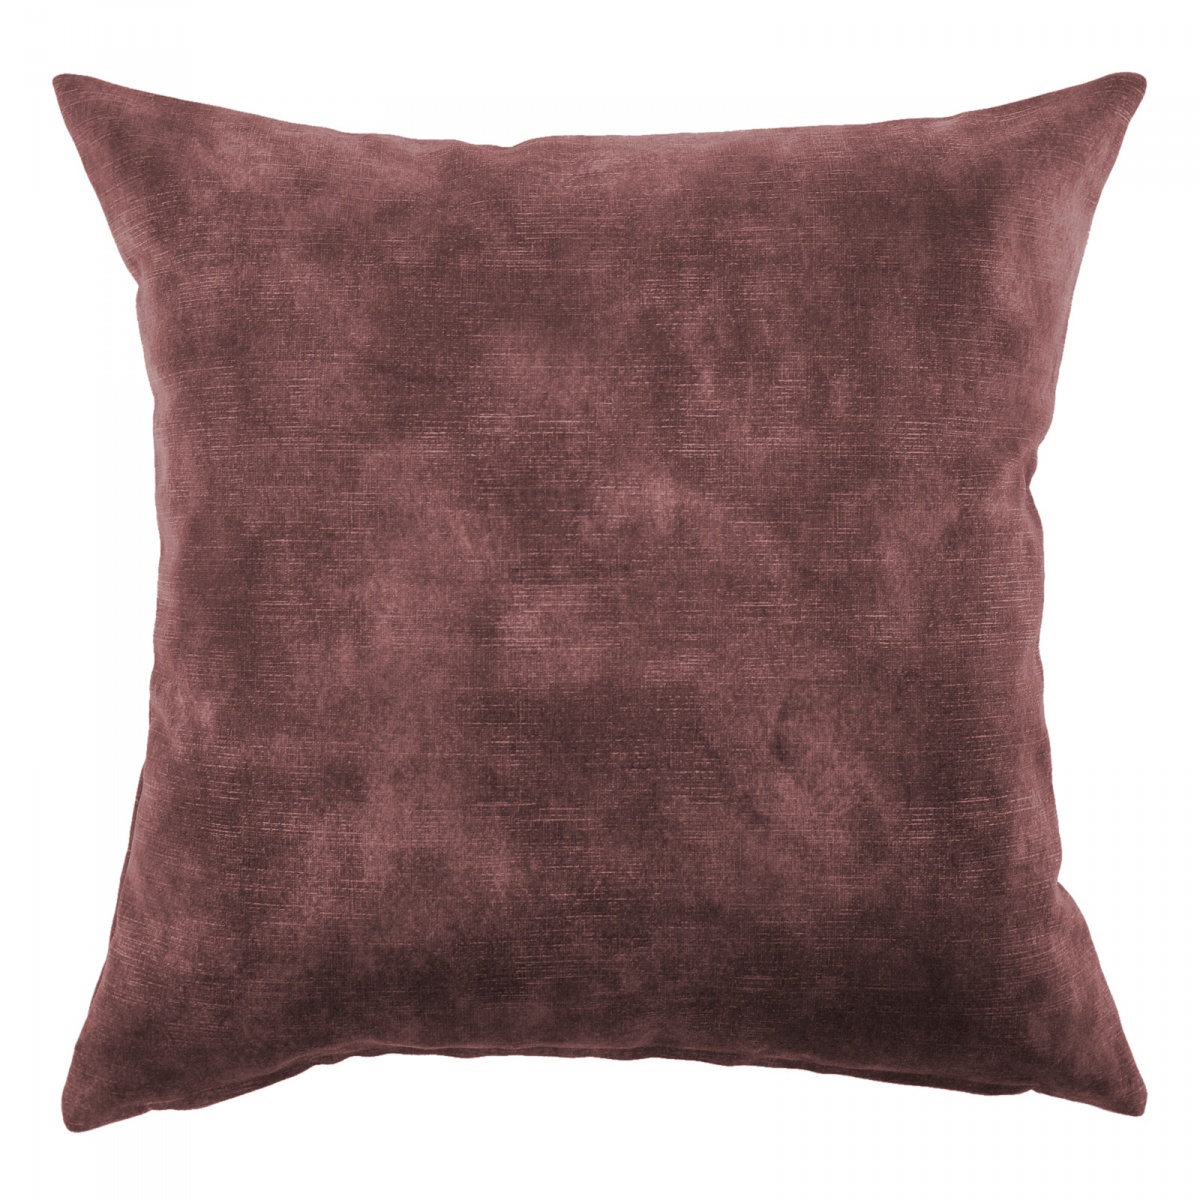 Lovely Oxblood Velvet Cushion - 40x40cm